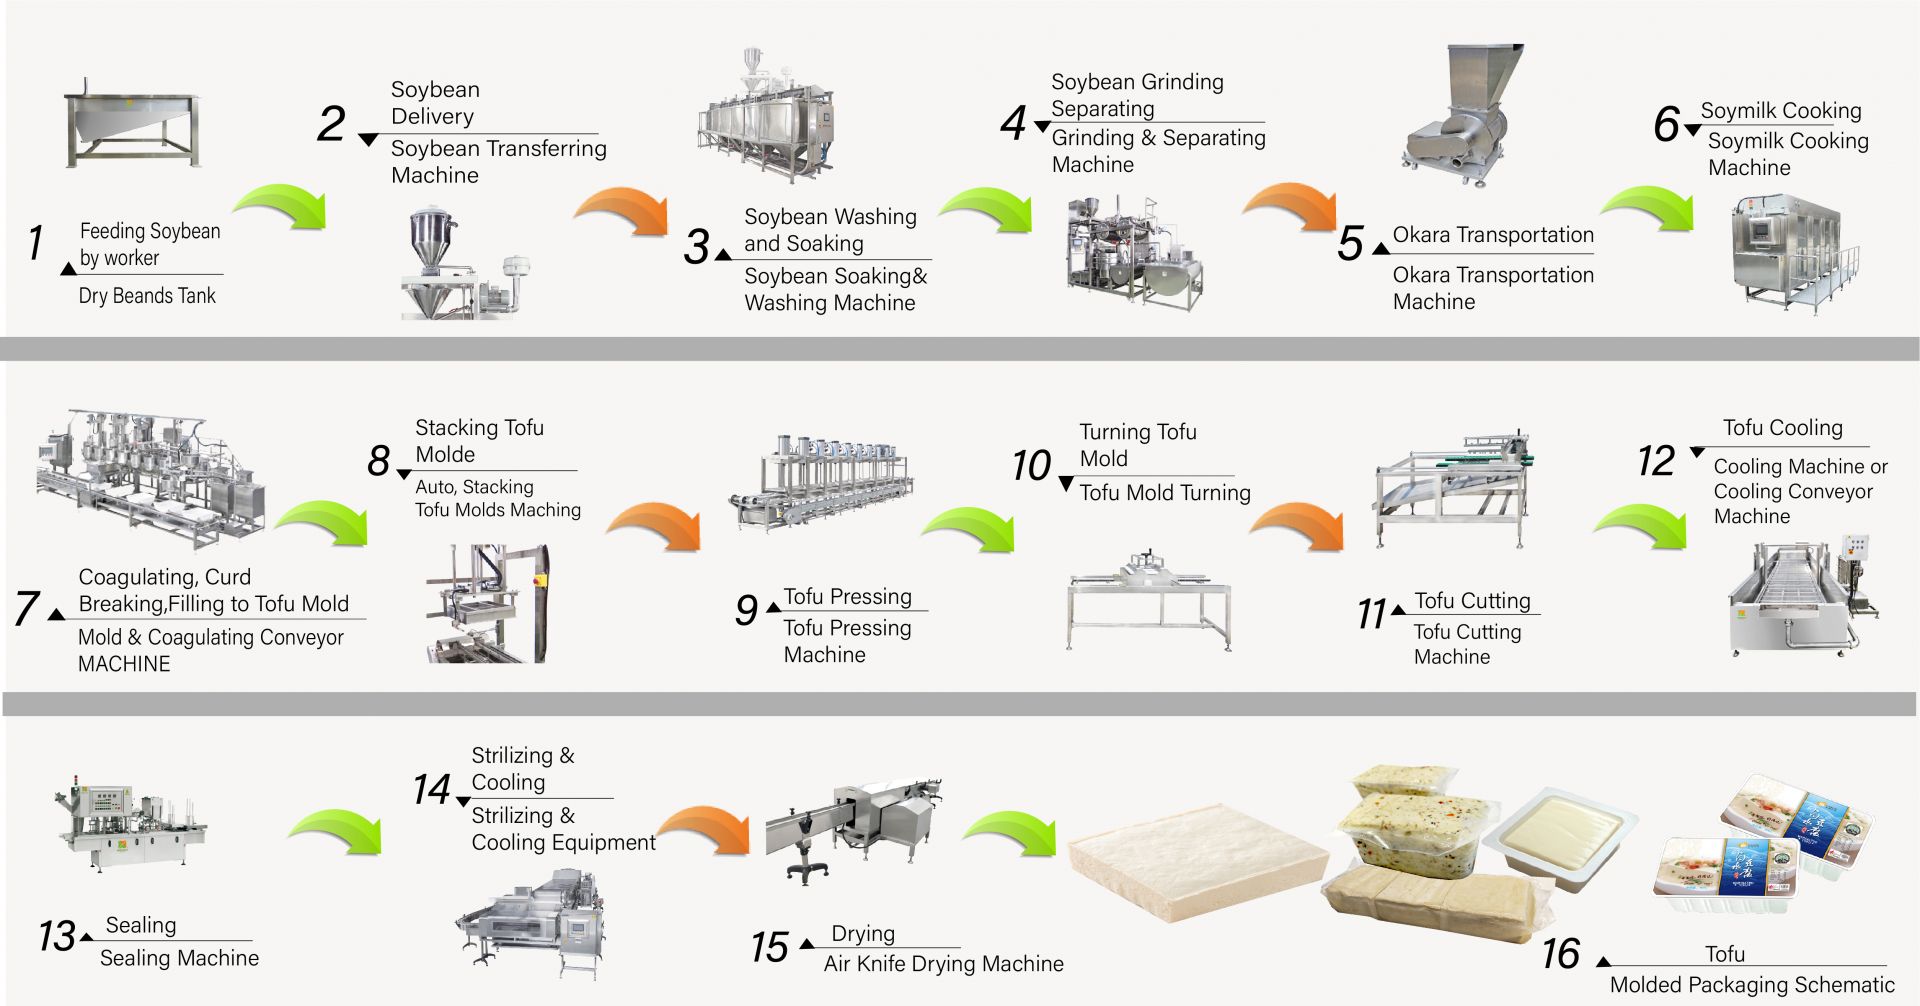 Kako napraviti tofu, proizvodnja tofua, izrada tofua, postupak izrade tofua, proizvodnja tofua, postupak proizvodnje tofua, proces tofua, metoda obrade tofua, proces obrade tofua, proizvodnja tofua, diagram proizvodnje tofua, proces proizvodnje tofua, Proces proizvodnje tofua, automatski stroj za izradu tofua, Automatski stroj za izradu tofua, Komercijalni stroj za izradu tofua, Jednostavni izrađivač tofua, Stroj za prženi tofu, Industrijska proizvodnja tofua, Oprema za proizvodnju soje, stroj za proizvodnju sojina mesa, stroj za proizvodnju sojinog mlijeka i tofua, oprema za proizvodnju tofua, tvornica tofua, stroj za proizvodnju tofua, stroj za proizvodnju tofua na prodaju, proizvođač strojeva za proizvodnju tofua, proizvođač strojeva za proizvodnju tofua, cijena stroja za proizvodnju tofua, strojevi za proizvodnju tofua, Strojevi i oprema za proizvodnju tofua, proizvođač tofua, stroj za izradu tofua, izrada tofua, oprema za izradu tofua, stroj za izradu tofua, cijena stroja za izradu tofua, proizvođači tofua, proizvodnja tofua, oprema za proizvodnju tofua, Tvornica proizvodnje tofua, pogon za proizvodnju tofua, oprema za proizvodnju tofua, tvornica za proizvodnju tofua, proizvodna linija za tofua, cijena proizvodne linije za tofua, proizvođač tofua, stroj za vegansko meso, proizvodna linija za vegansko meso, povrće tofu strojevi i oprema